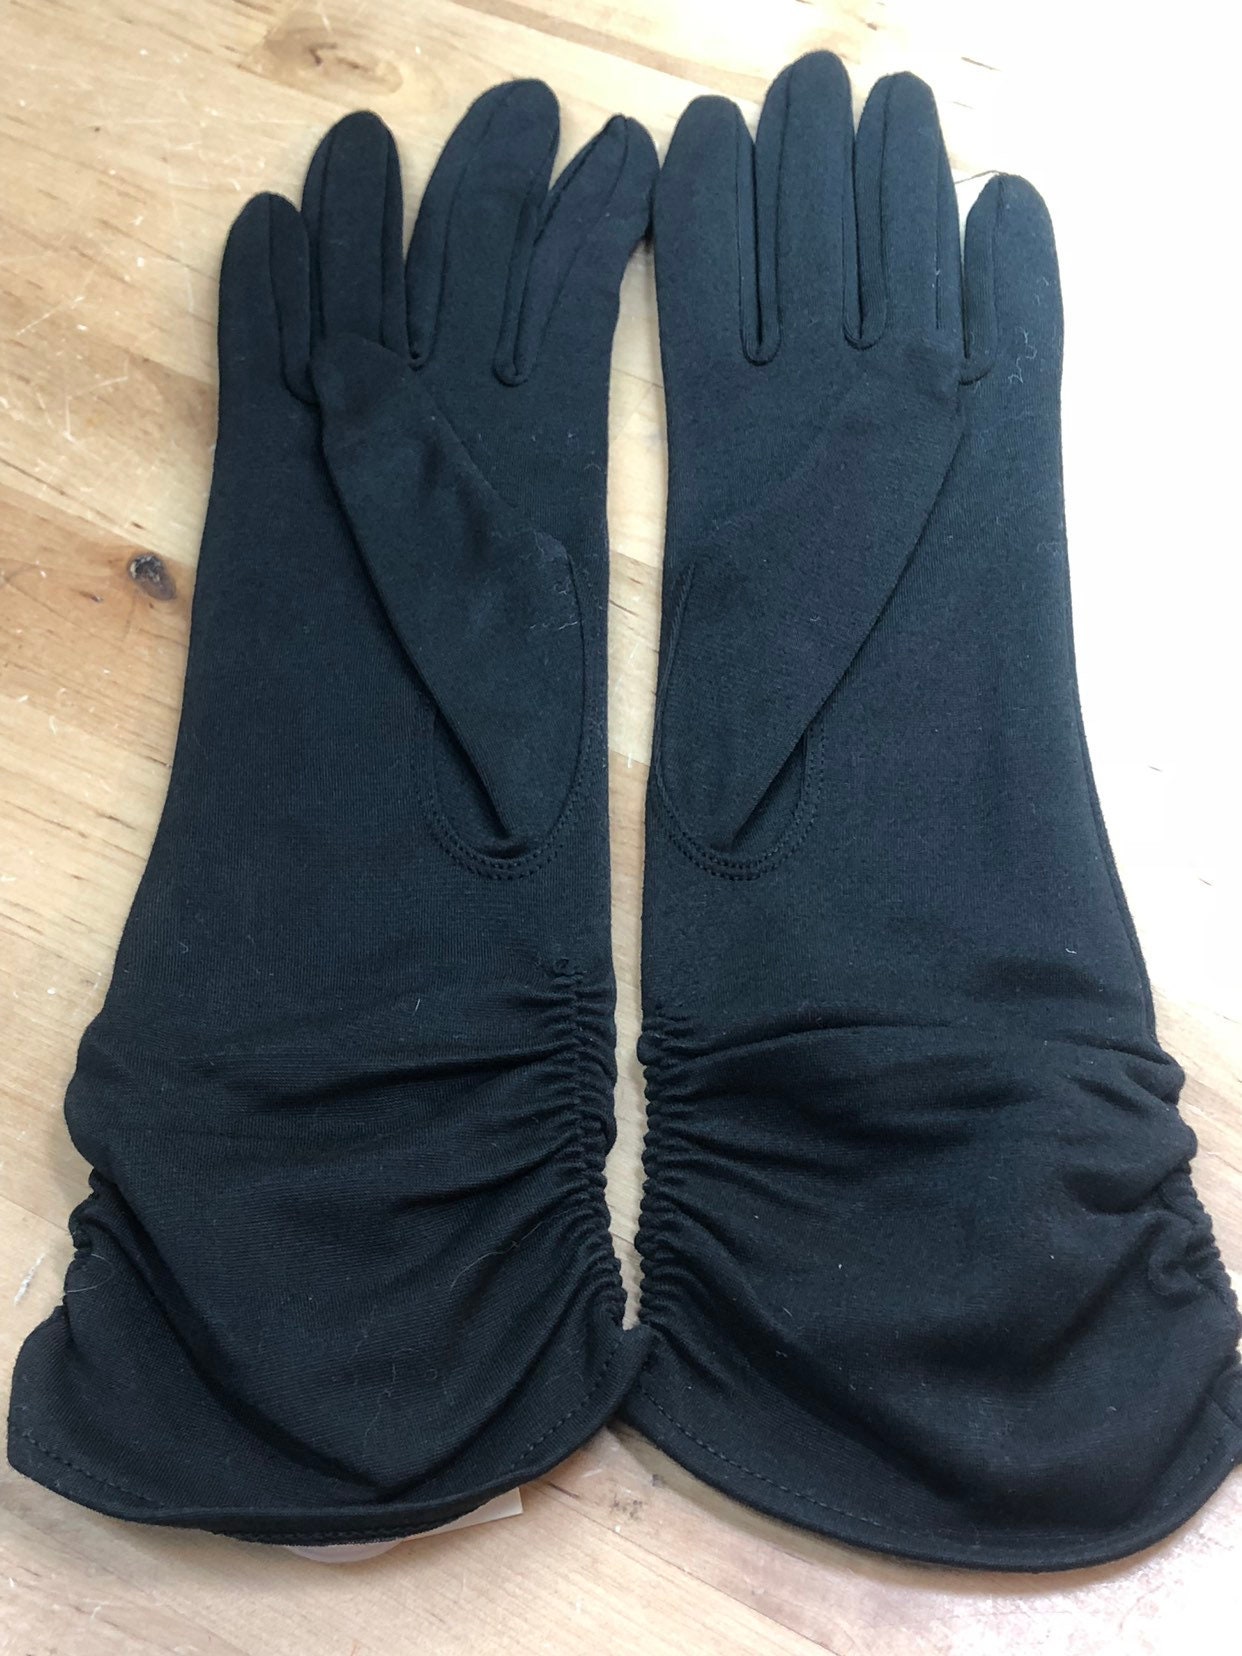 Long Black Fashion Gloves, Vintage Formal Evening Cocktail Gloves ...